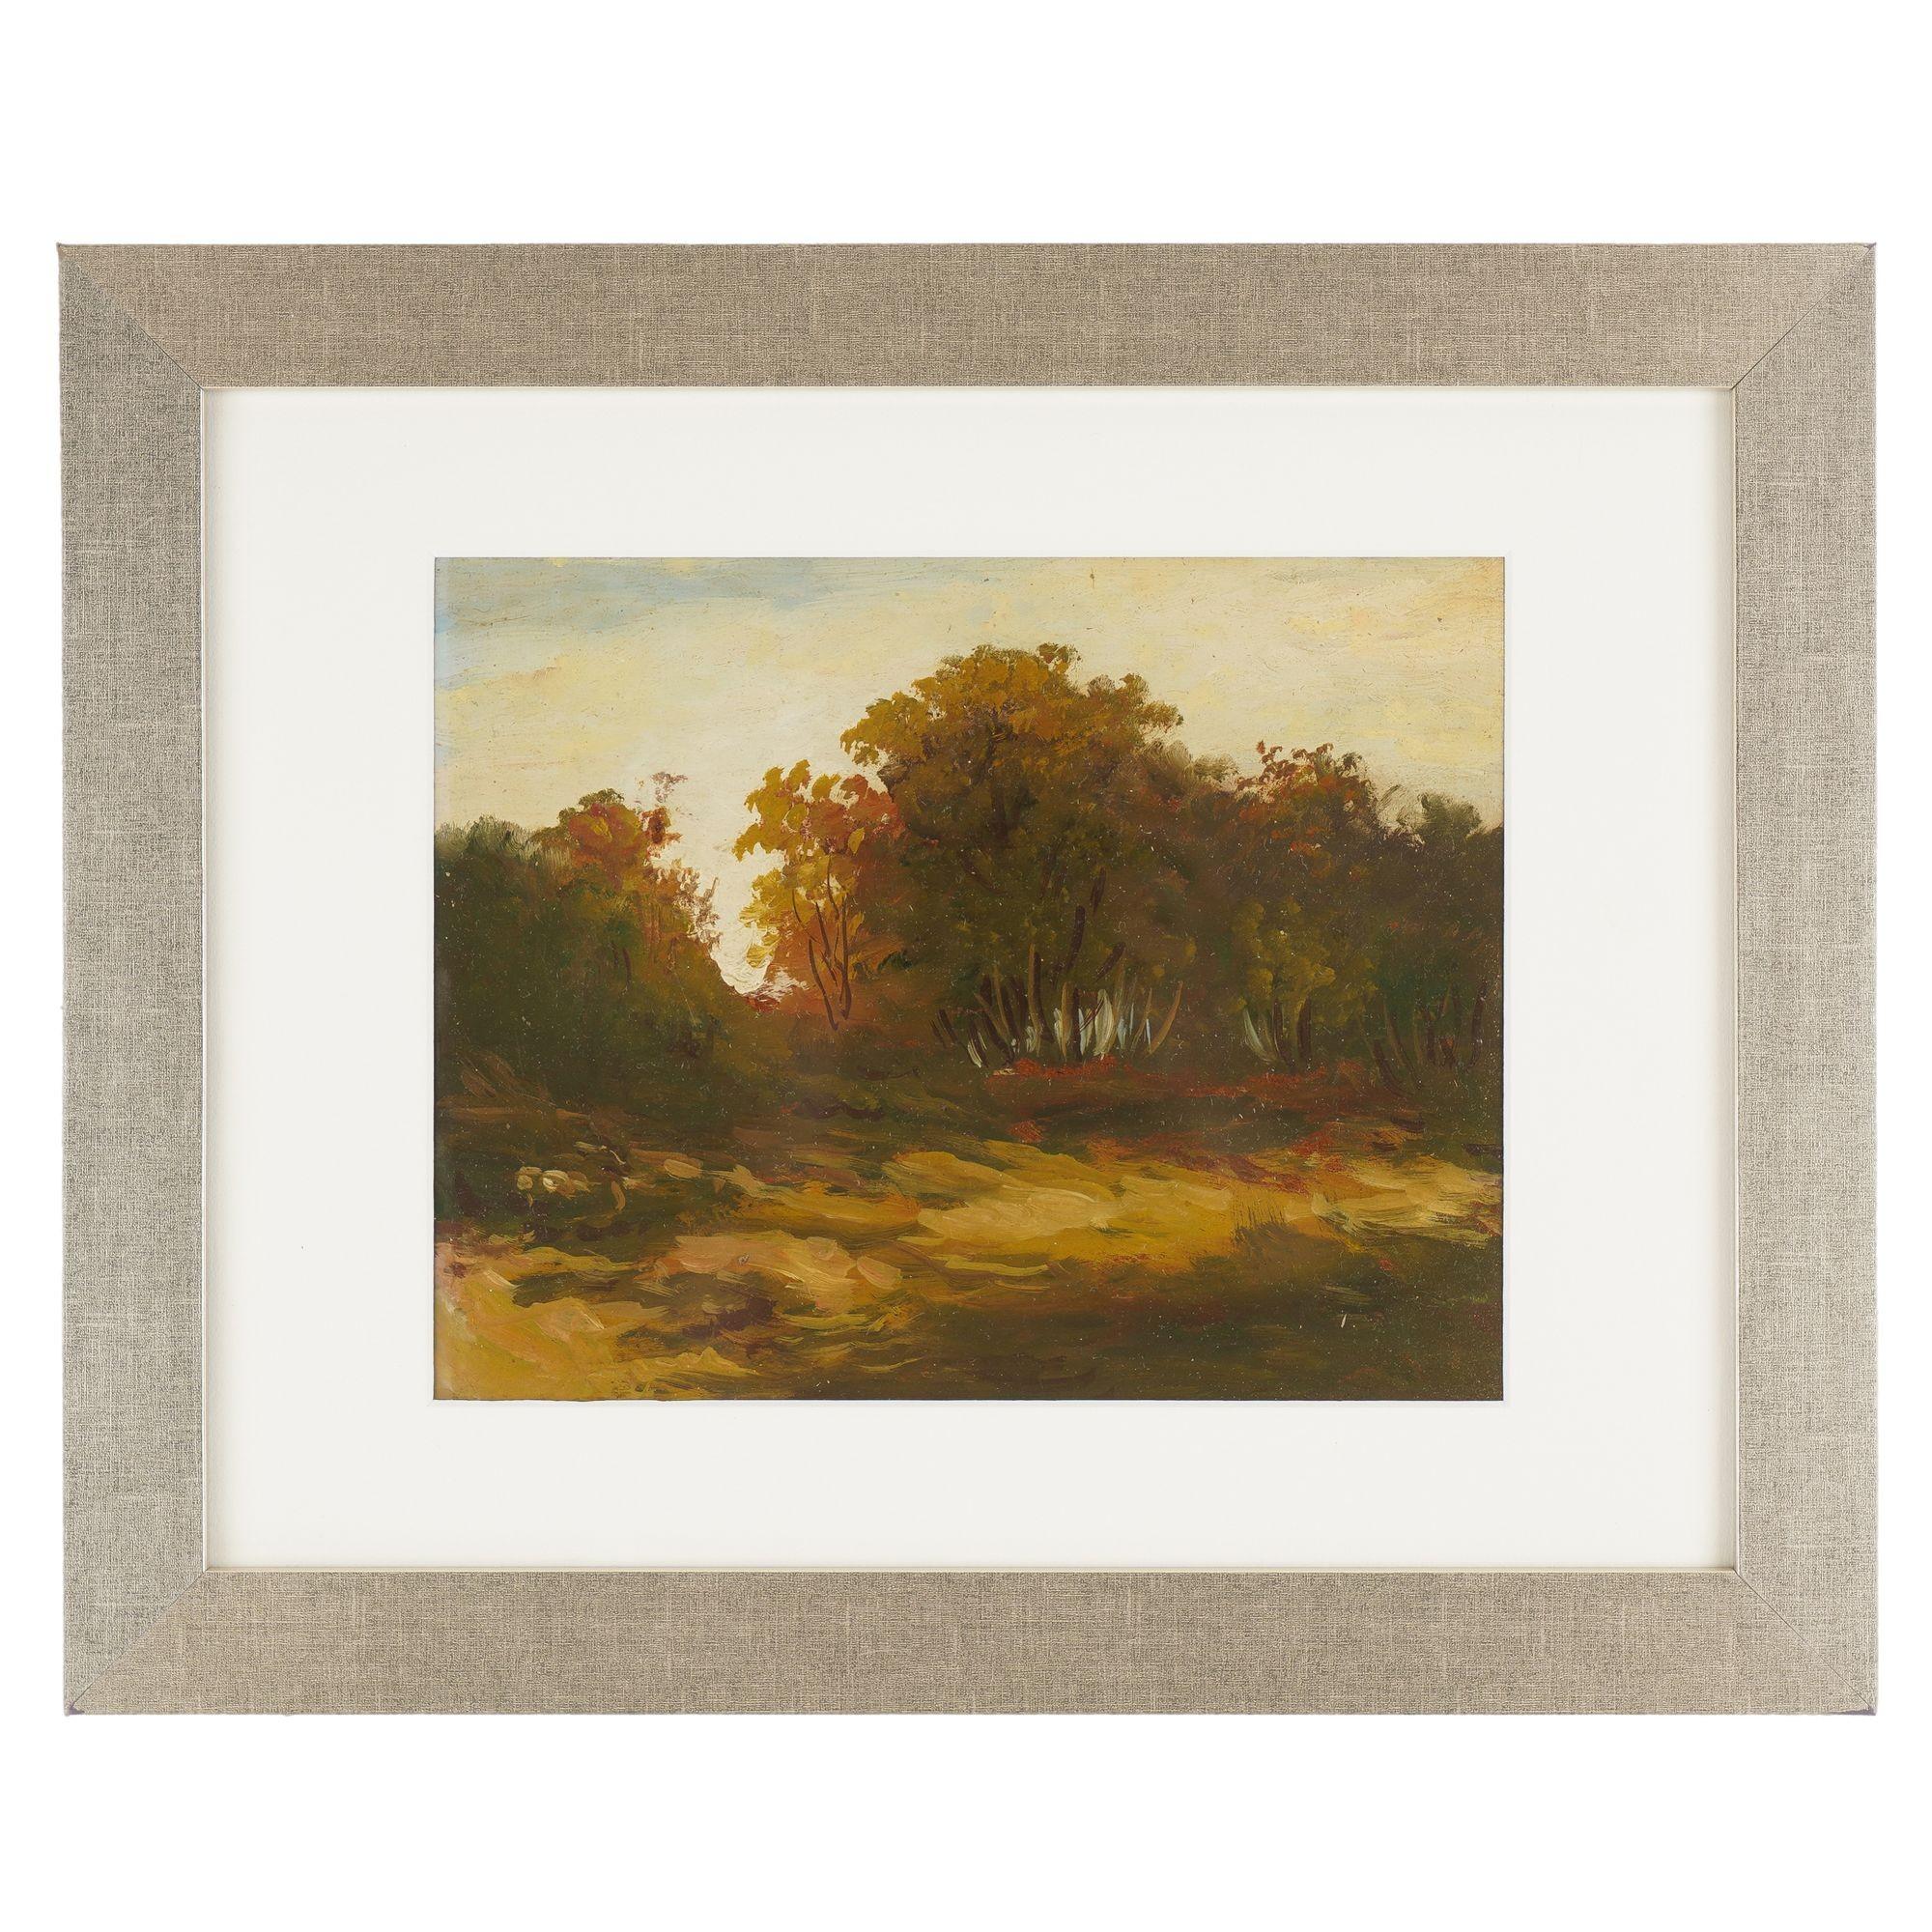 Ensemble anonyme de trois études de paysage à l'huile sur carton. Le premier tableau représente un bosquet d'arbres traversant une prairie à l'heure dorée, avec le soleil bas dans le ciel à l'arrière-plan et projetant une lumière chaude et orangée